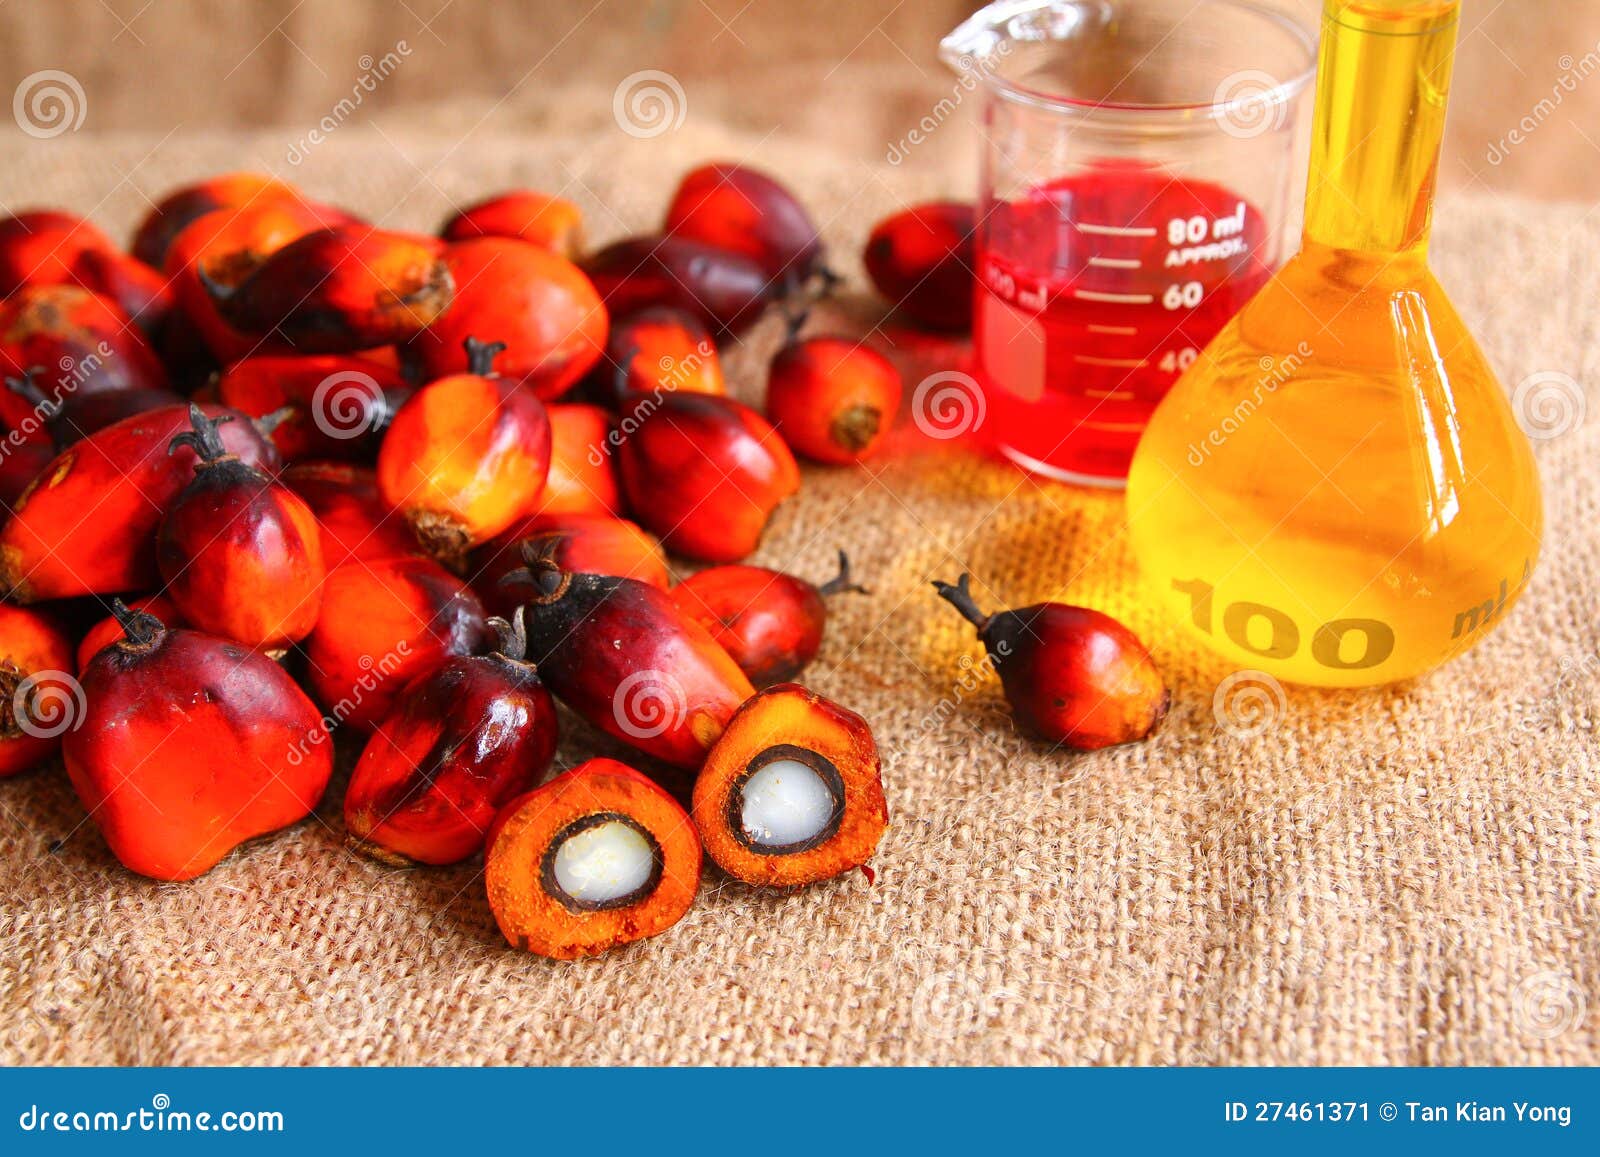 Пальмовое масло: польза и вред, пищевая ценность и химический состав, разновидности пальмового масла и его применение.
